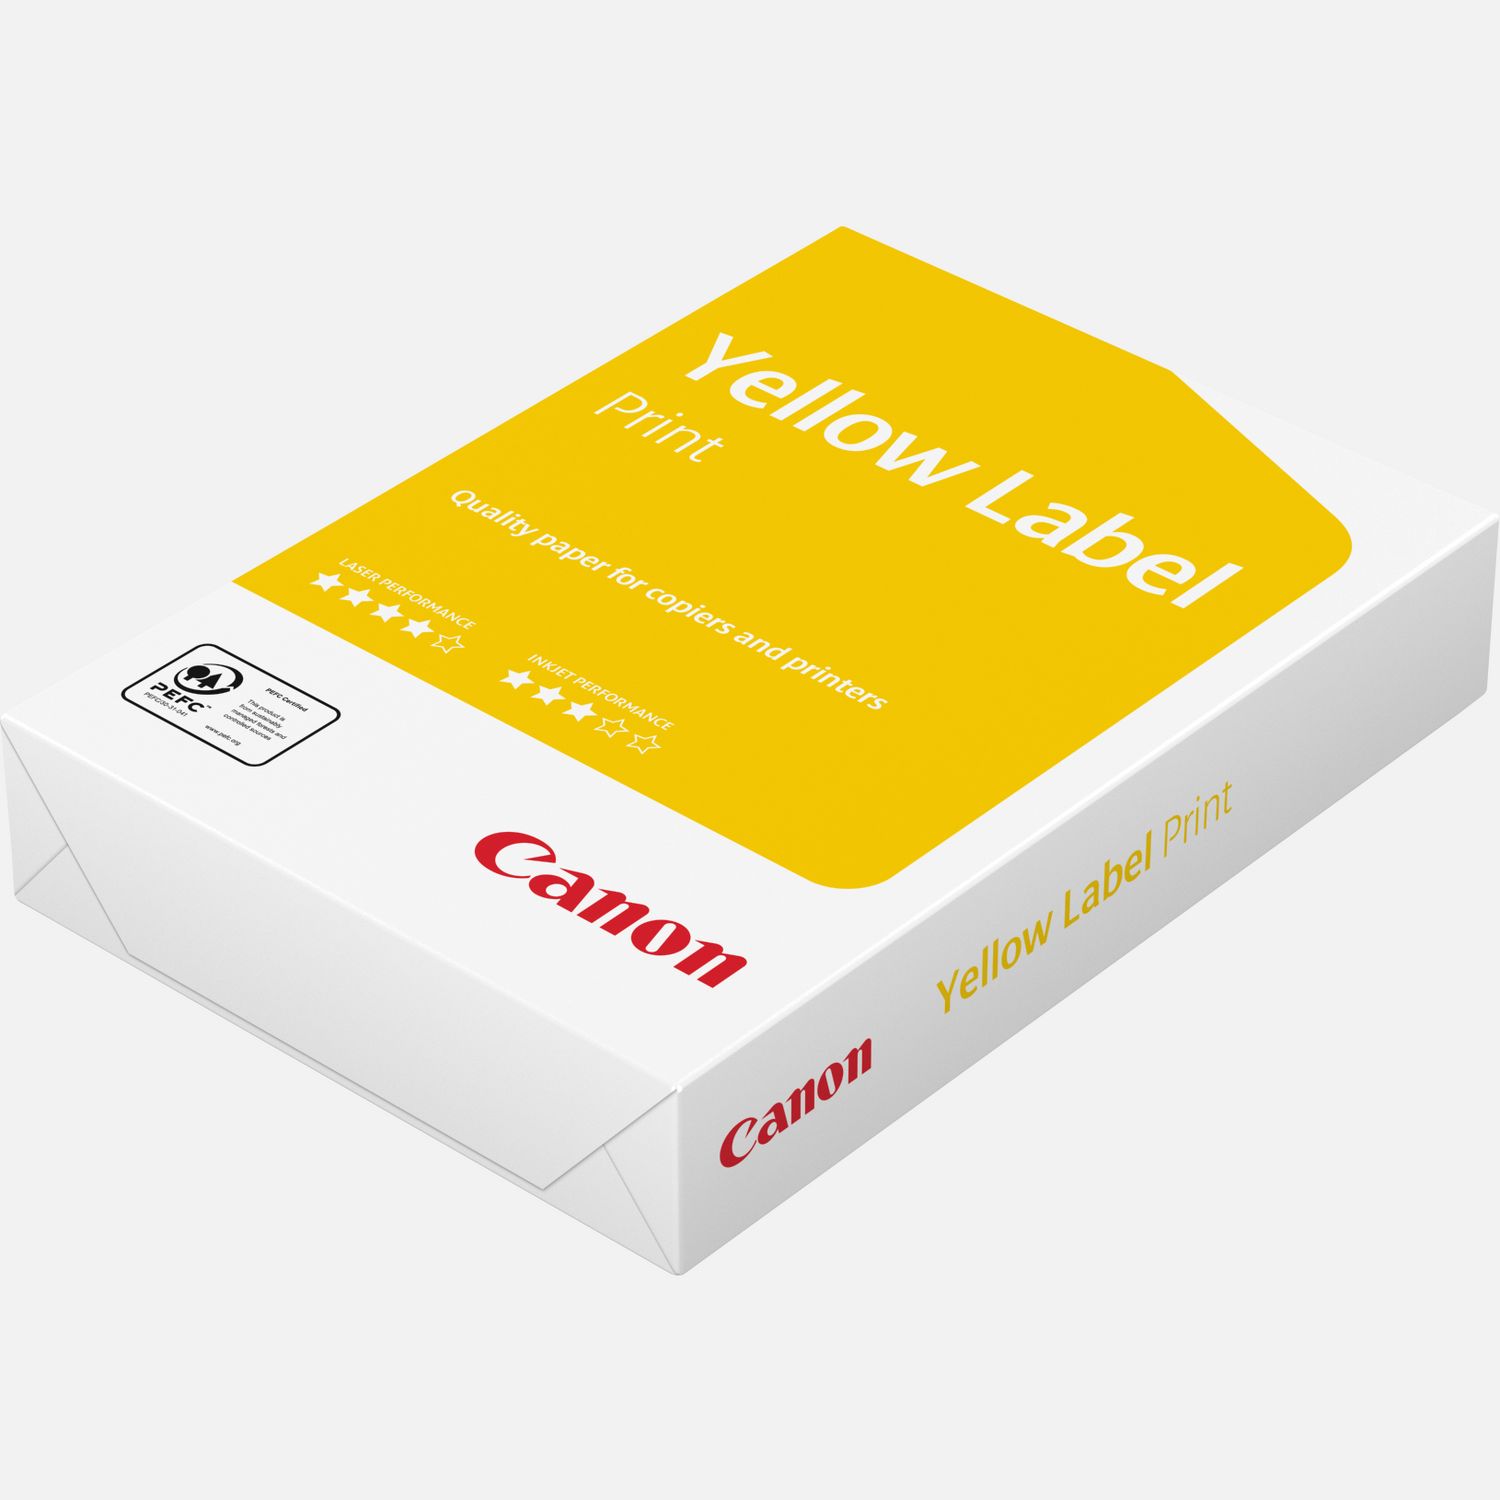 In werkelijkheid Laboratorium pedaal Canon Yellow Label 80 g/m² A4 papier – 500 vel — Canon Nederland Store